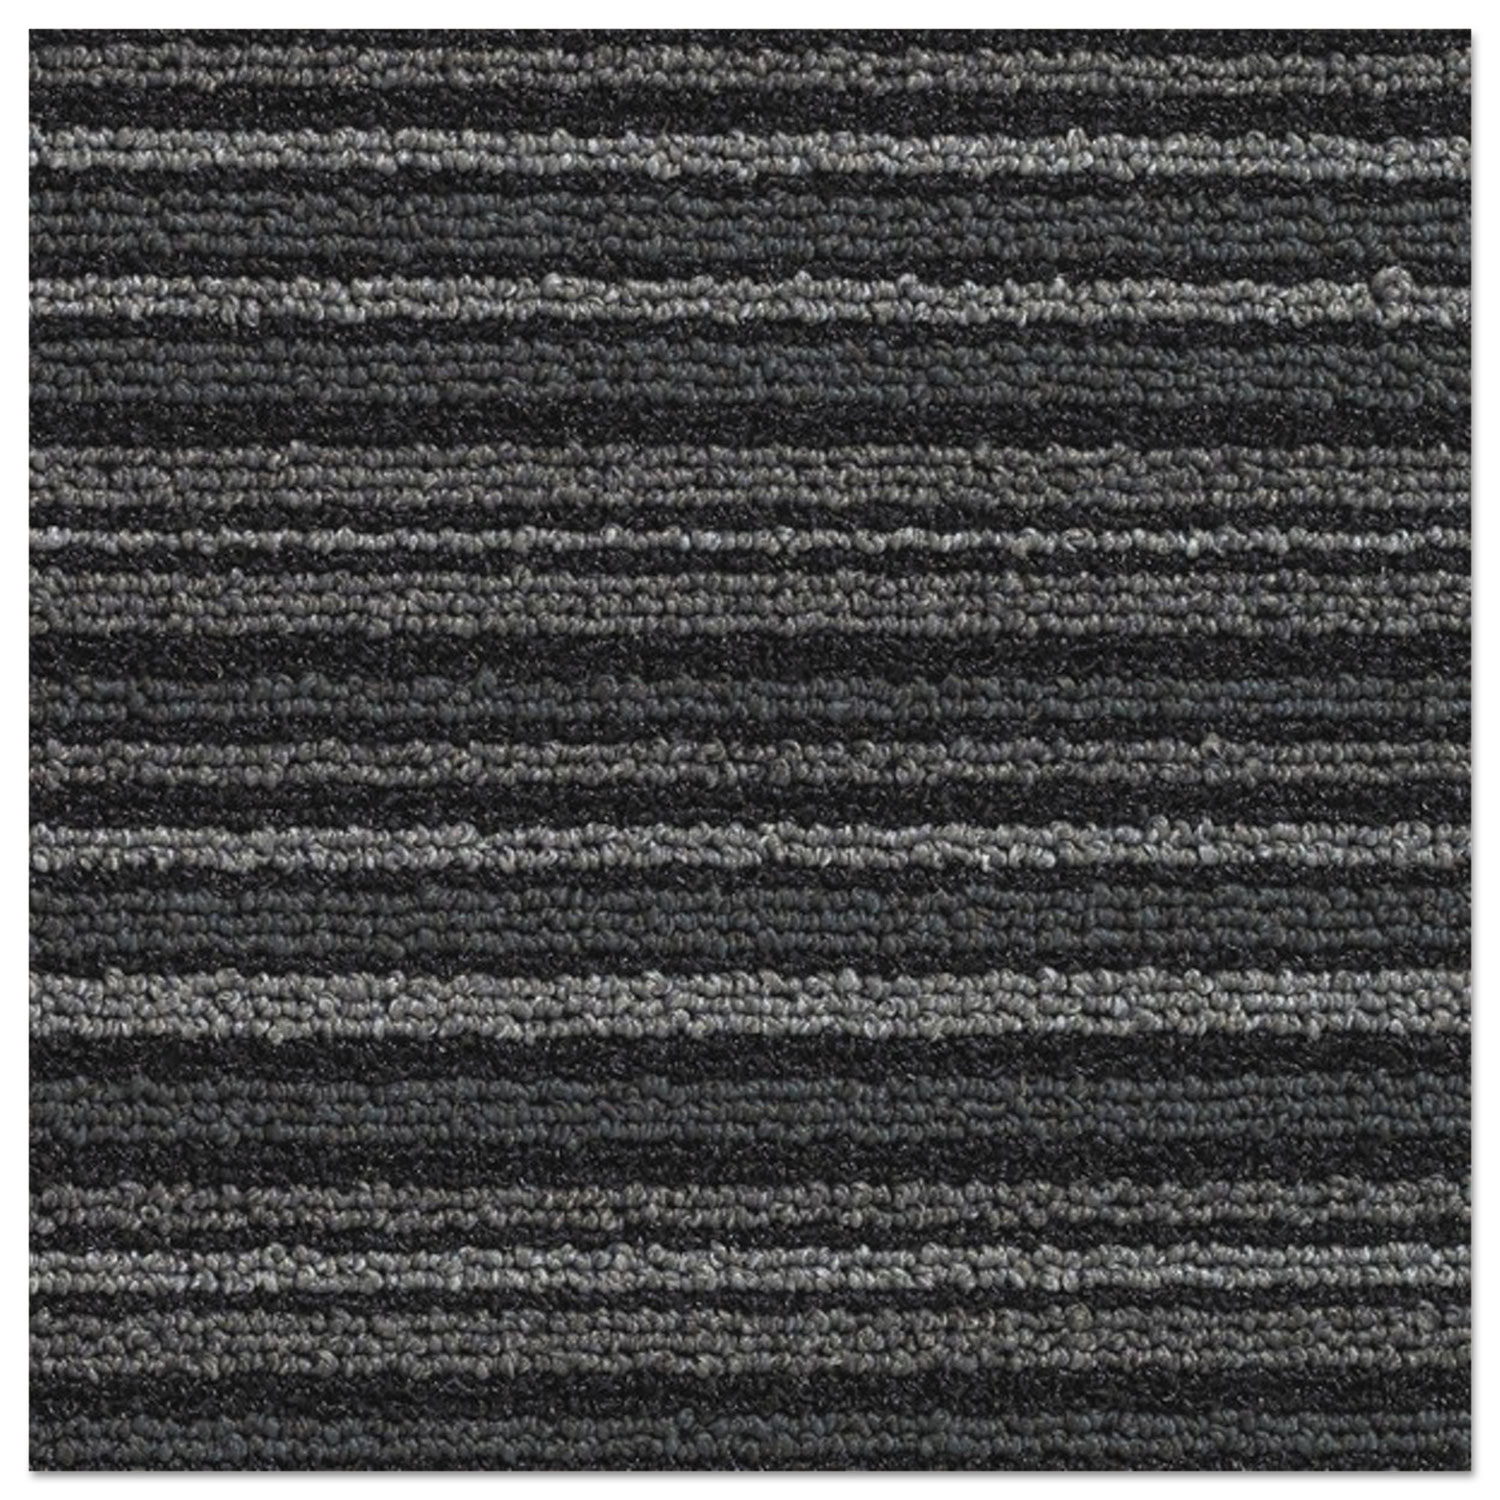 Nomad 7000 Heavy Traffic Carpet Matting, Nylon/Polypropylene, 36 x 60, Gray